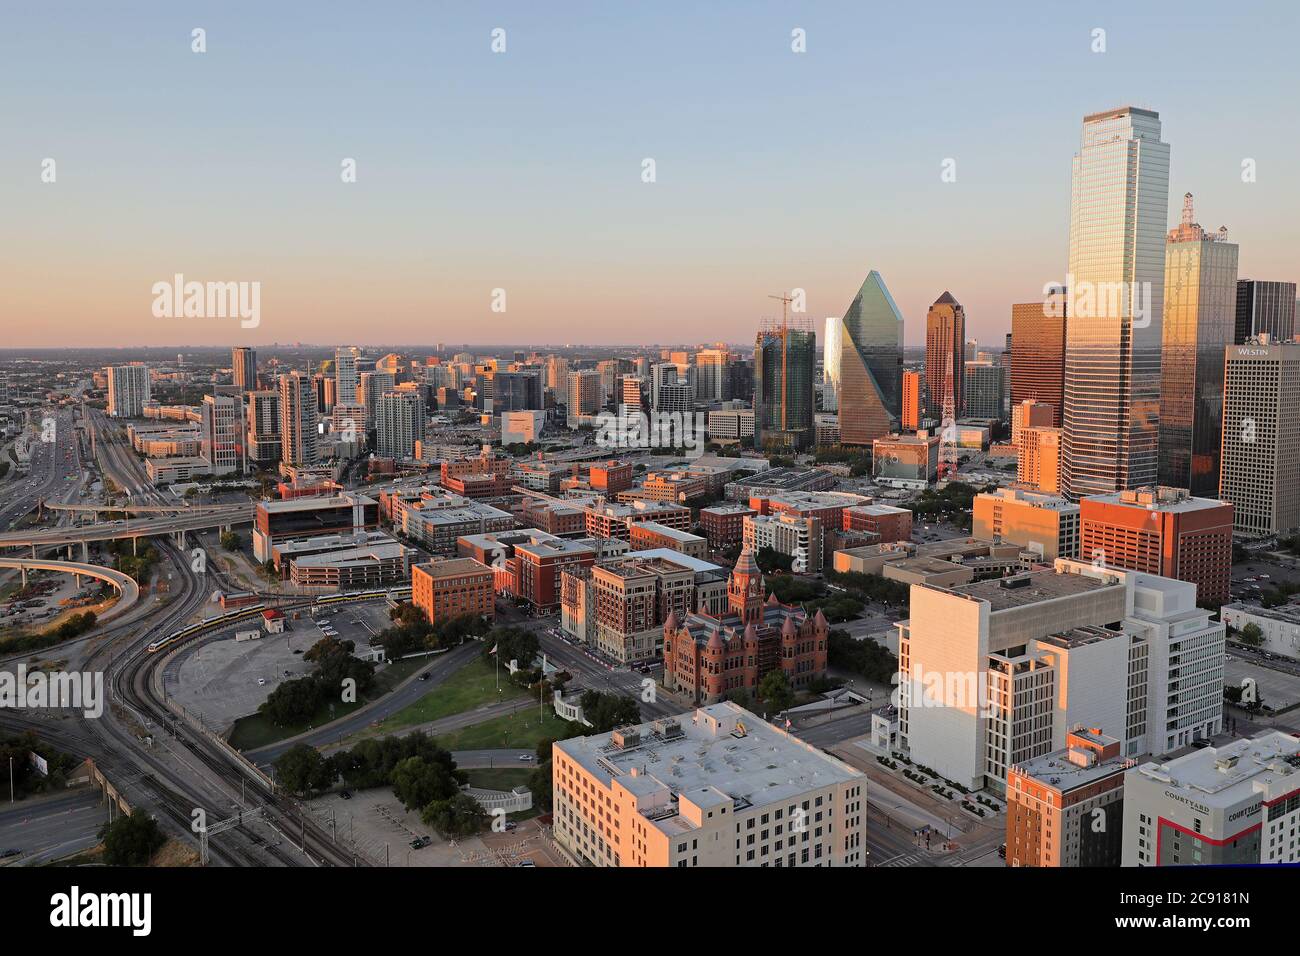 Le centre-ville de Dallas dans l'heure d'or avant le coucher du soleil. Banque D'Images